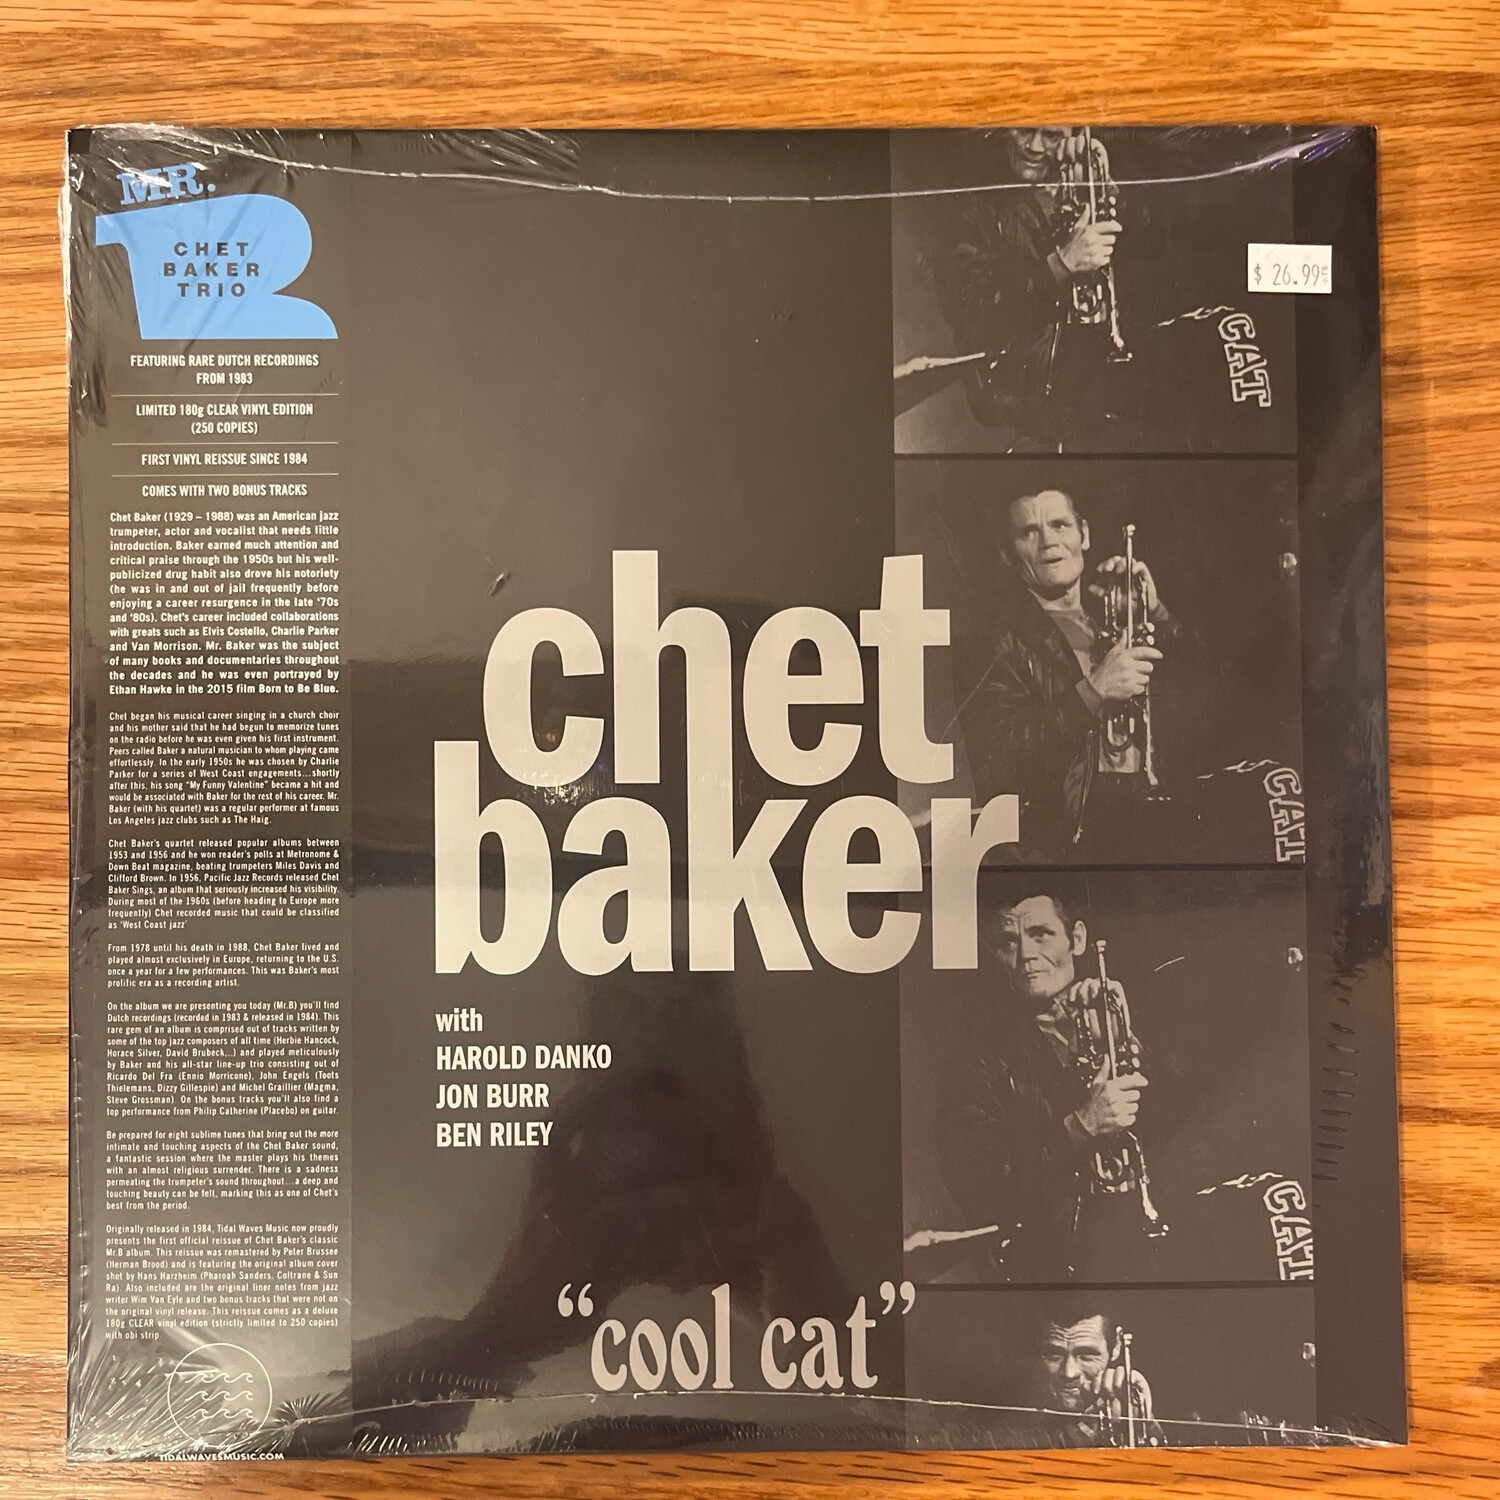 Chet Baker “Cool Cat”